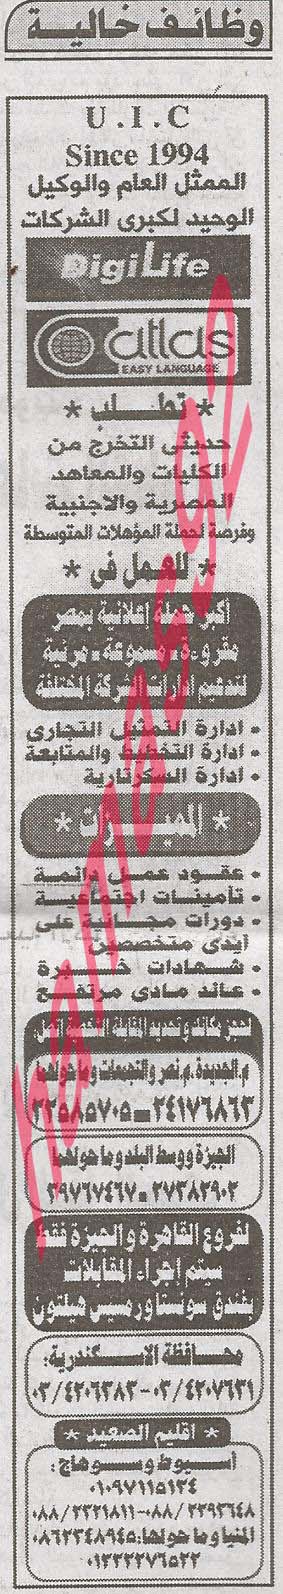 وظائف جريدة الاهرام الخميس 12-9-2013